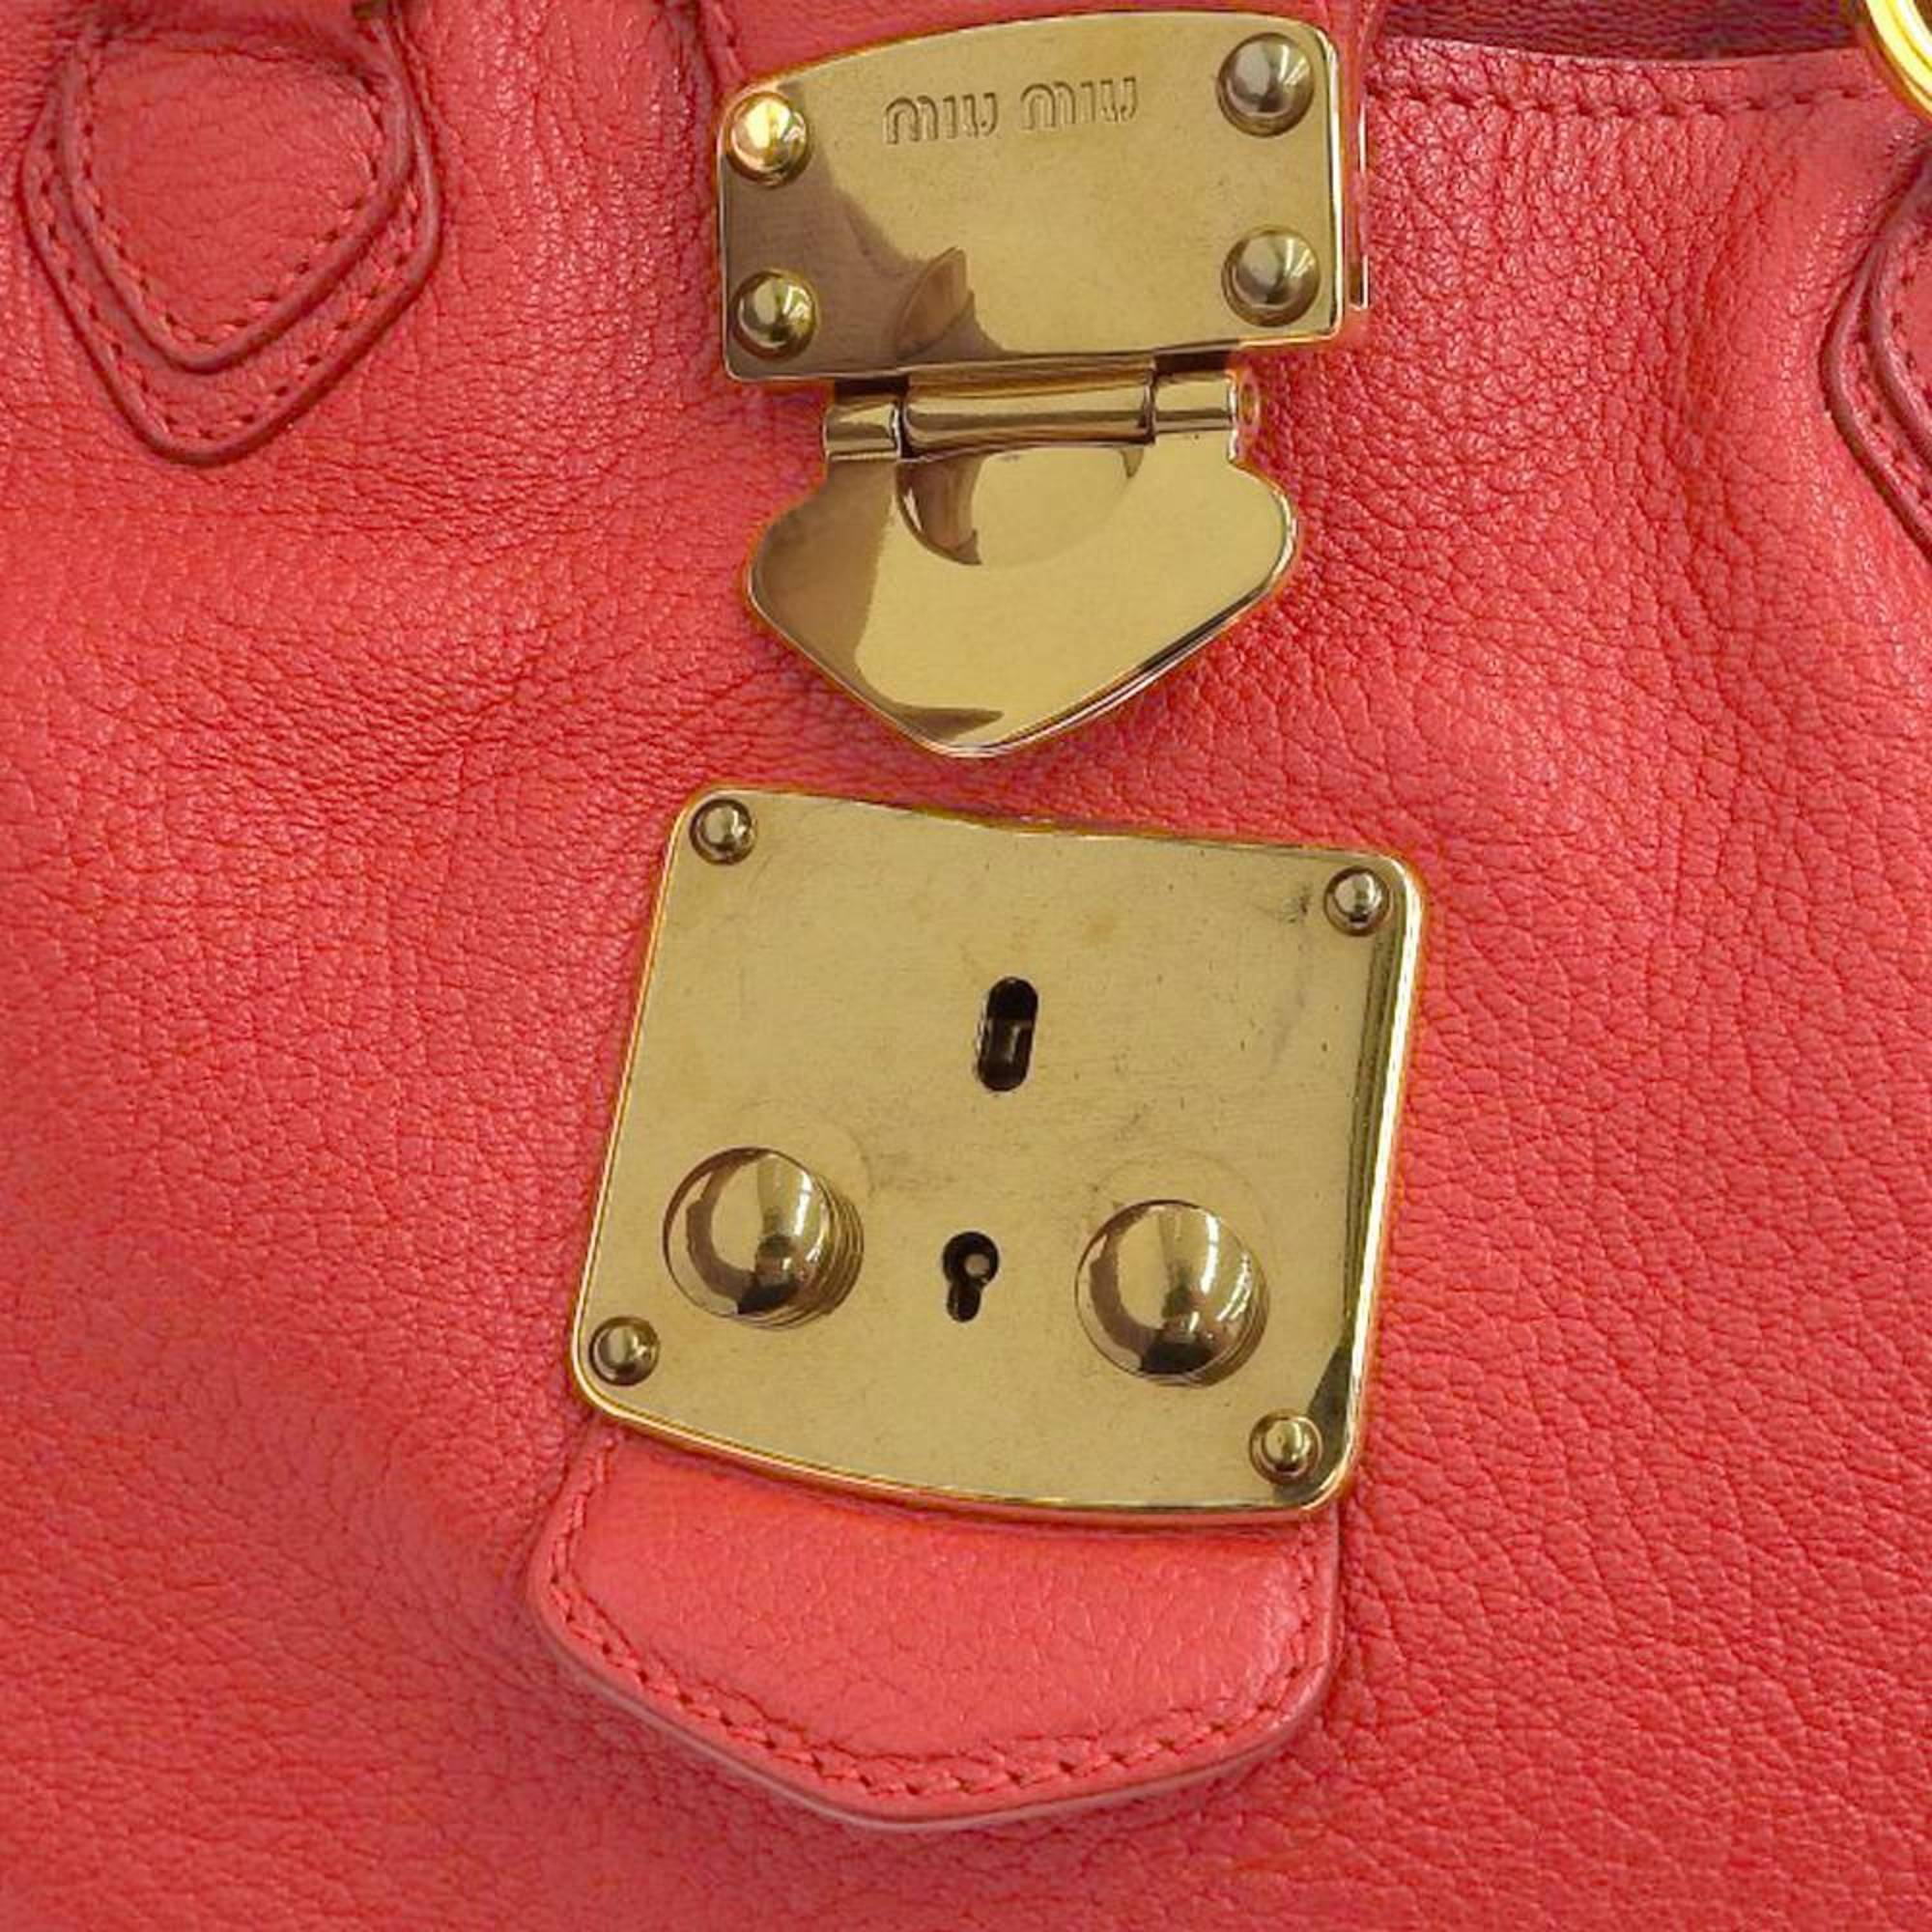 Miu Miu Miu Madras handbag leather red